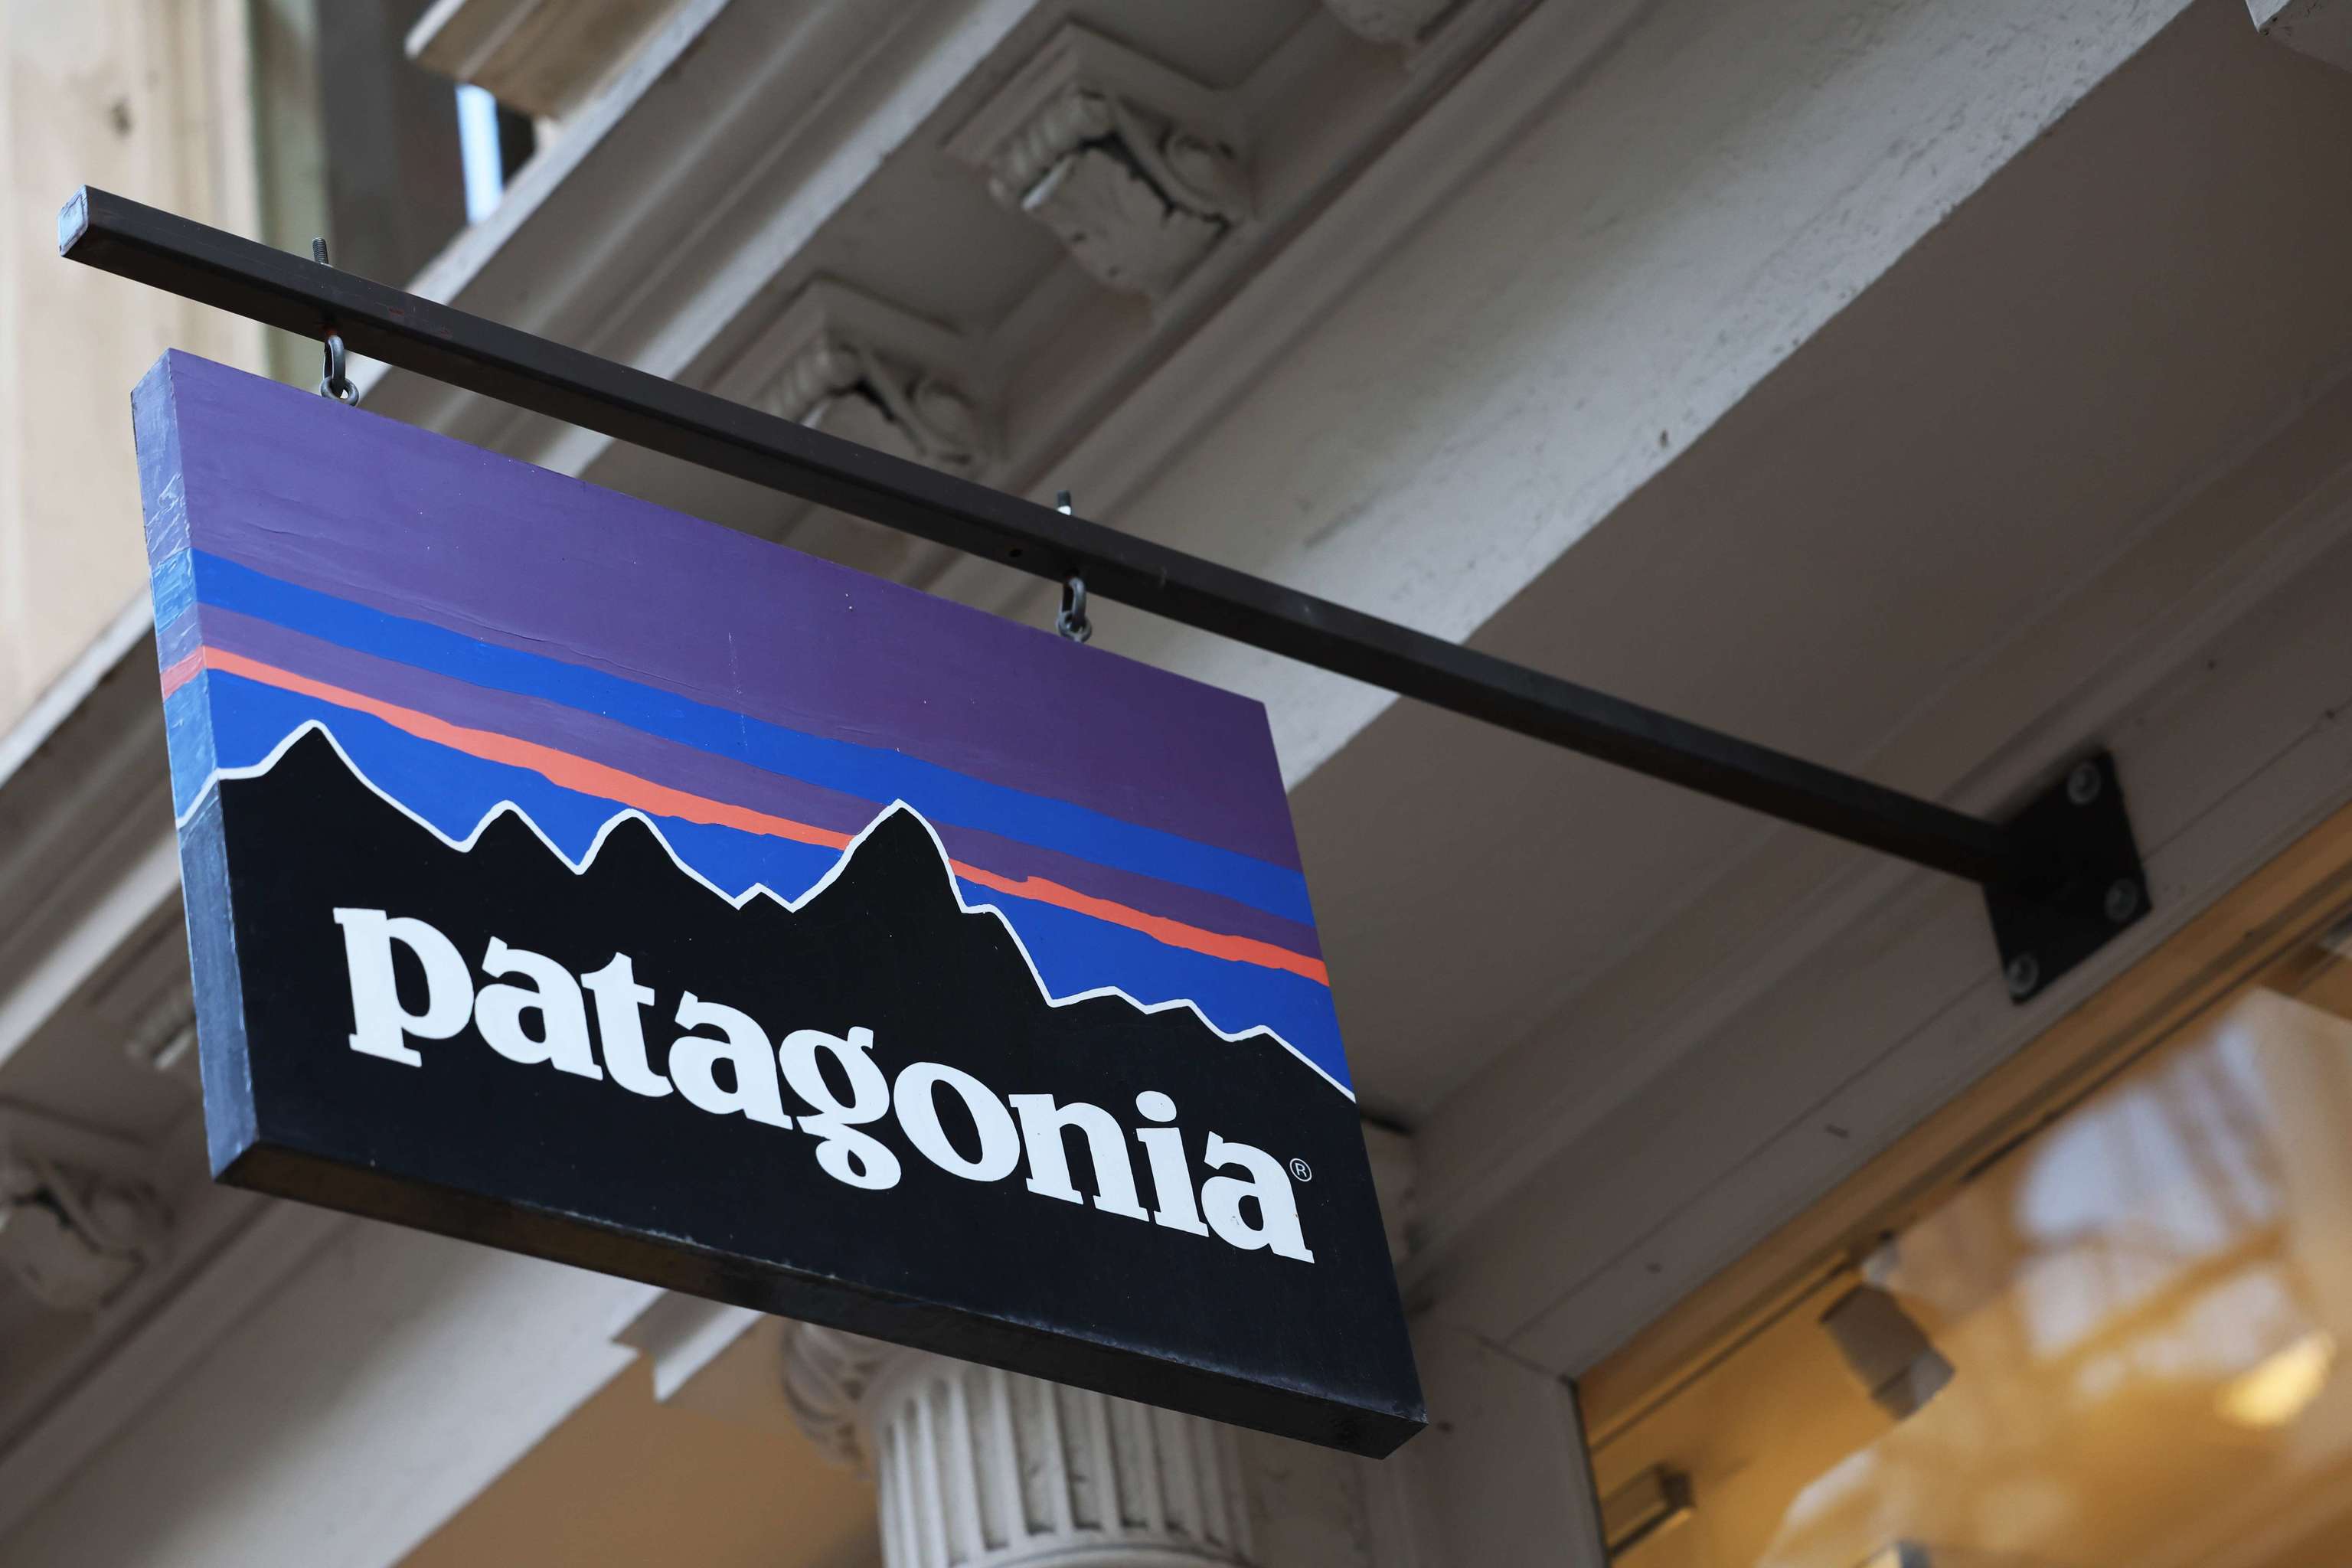 El fundador Patagonia su marca ropa para la protección del medioambiente |